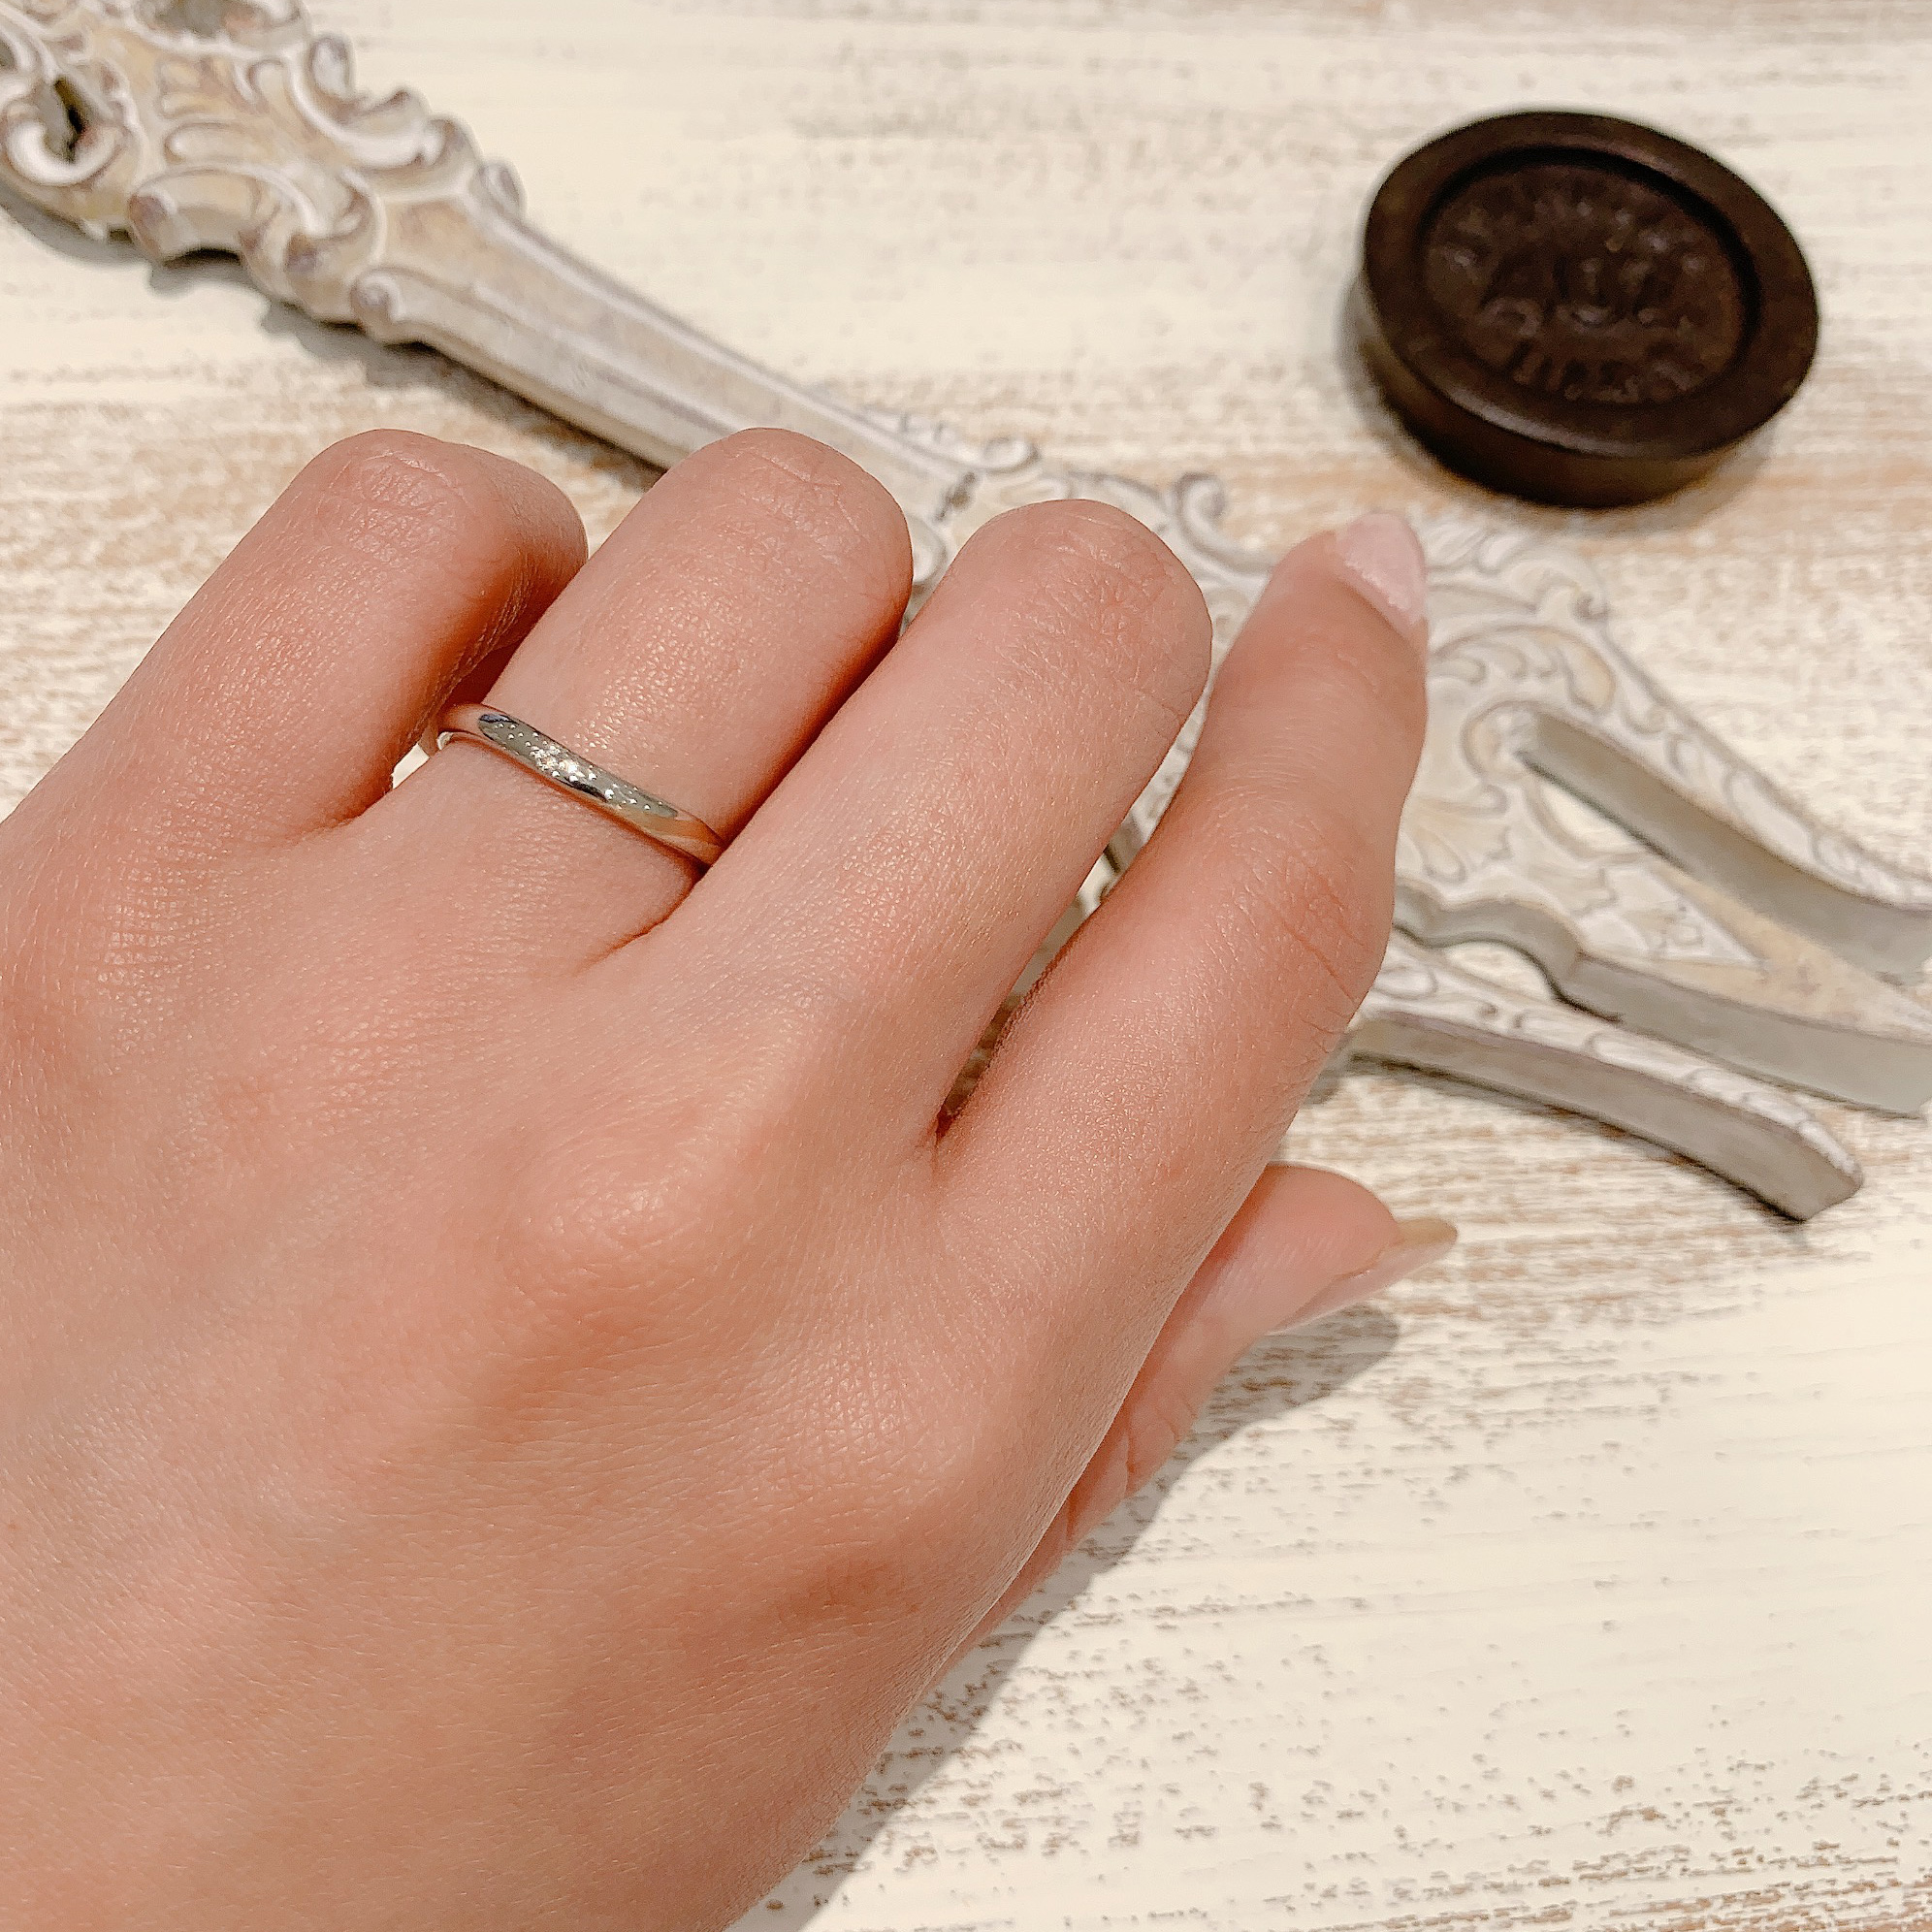 S字ラインが指に馴染むシンプルなデザインの結婚指輪です。伏せ込み留めのダイヤモンドがポイントです。